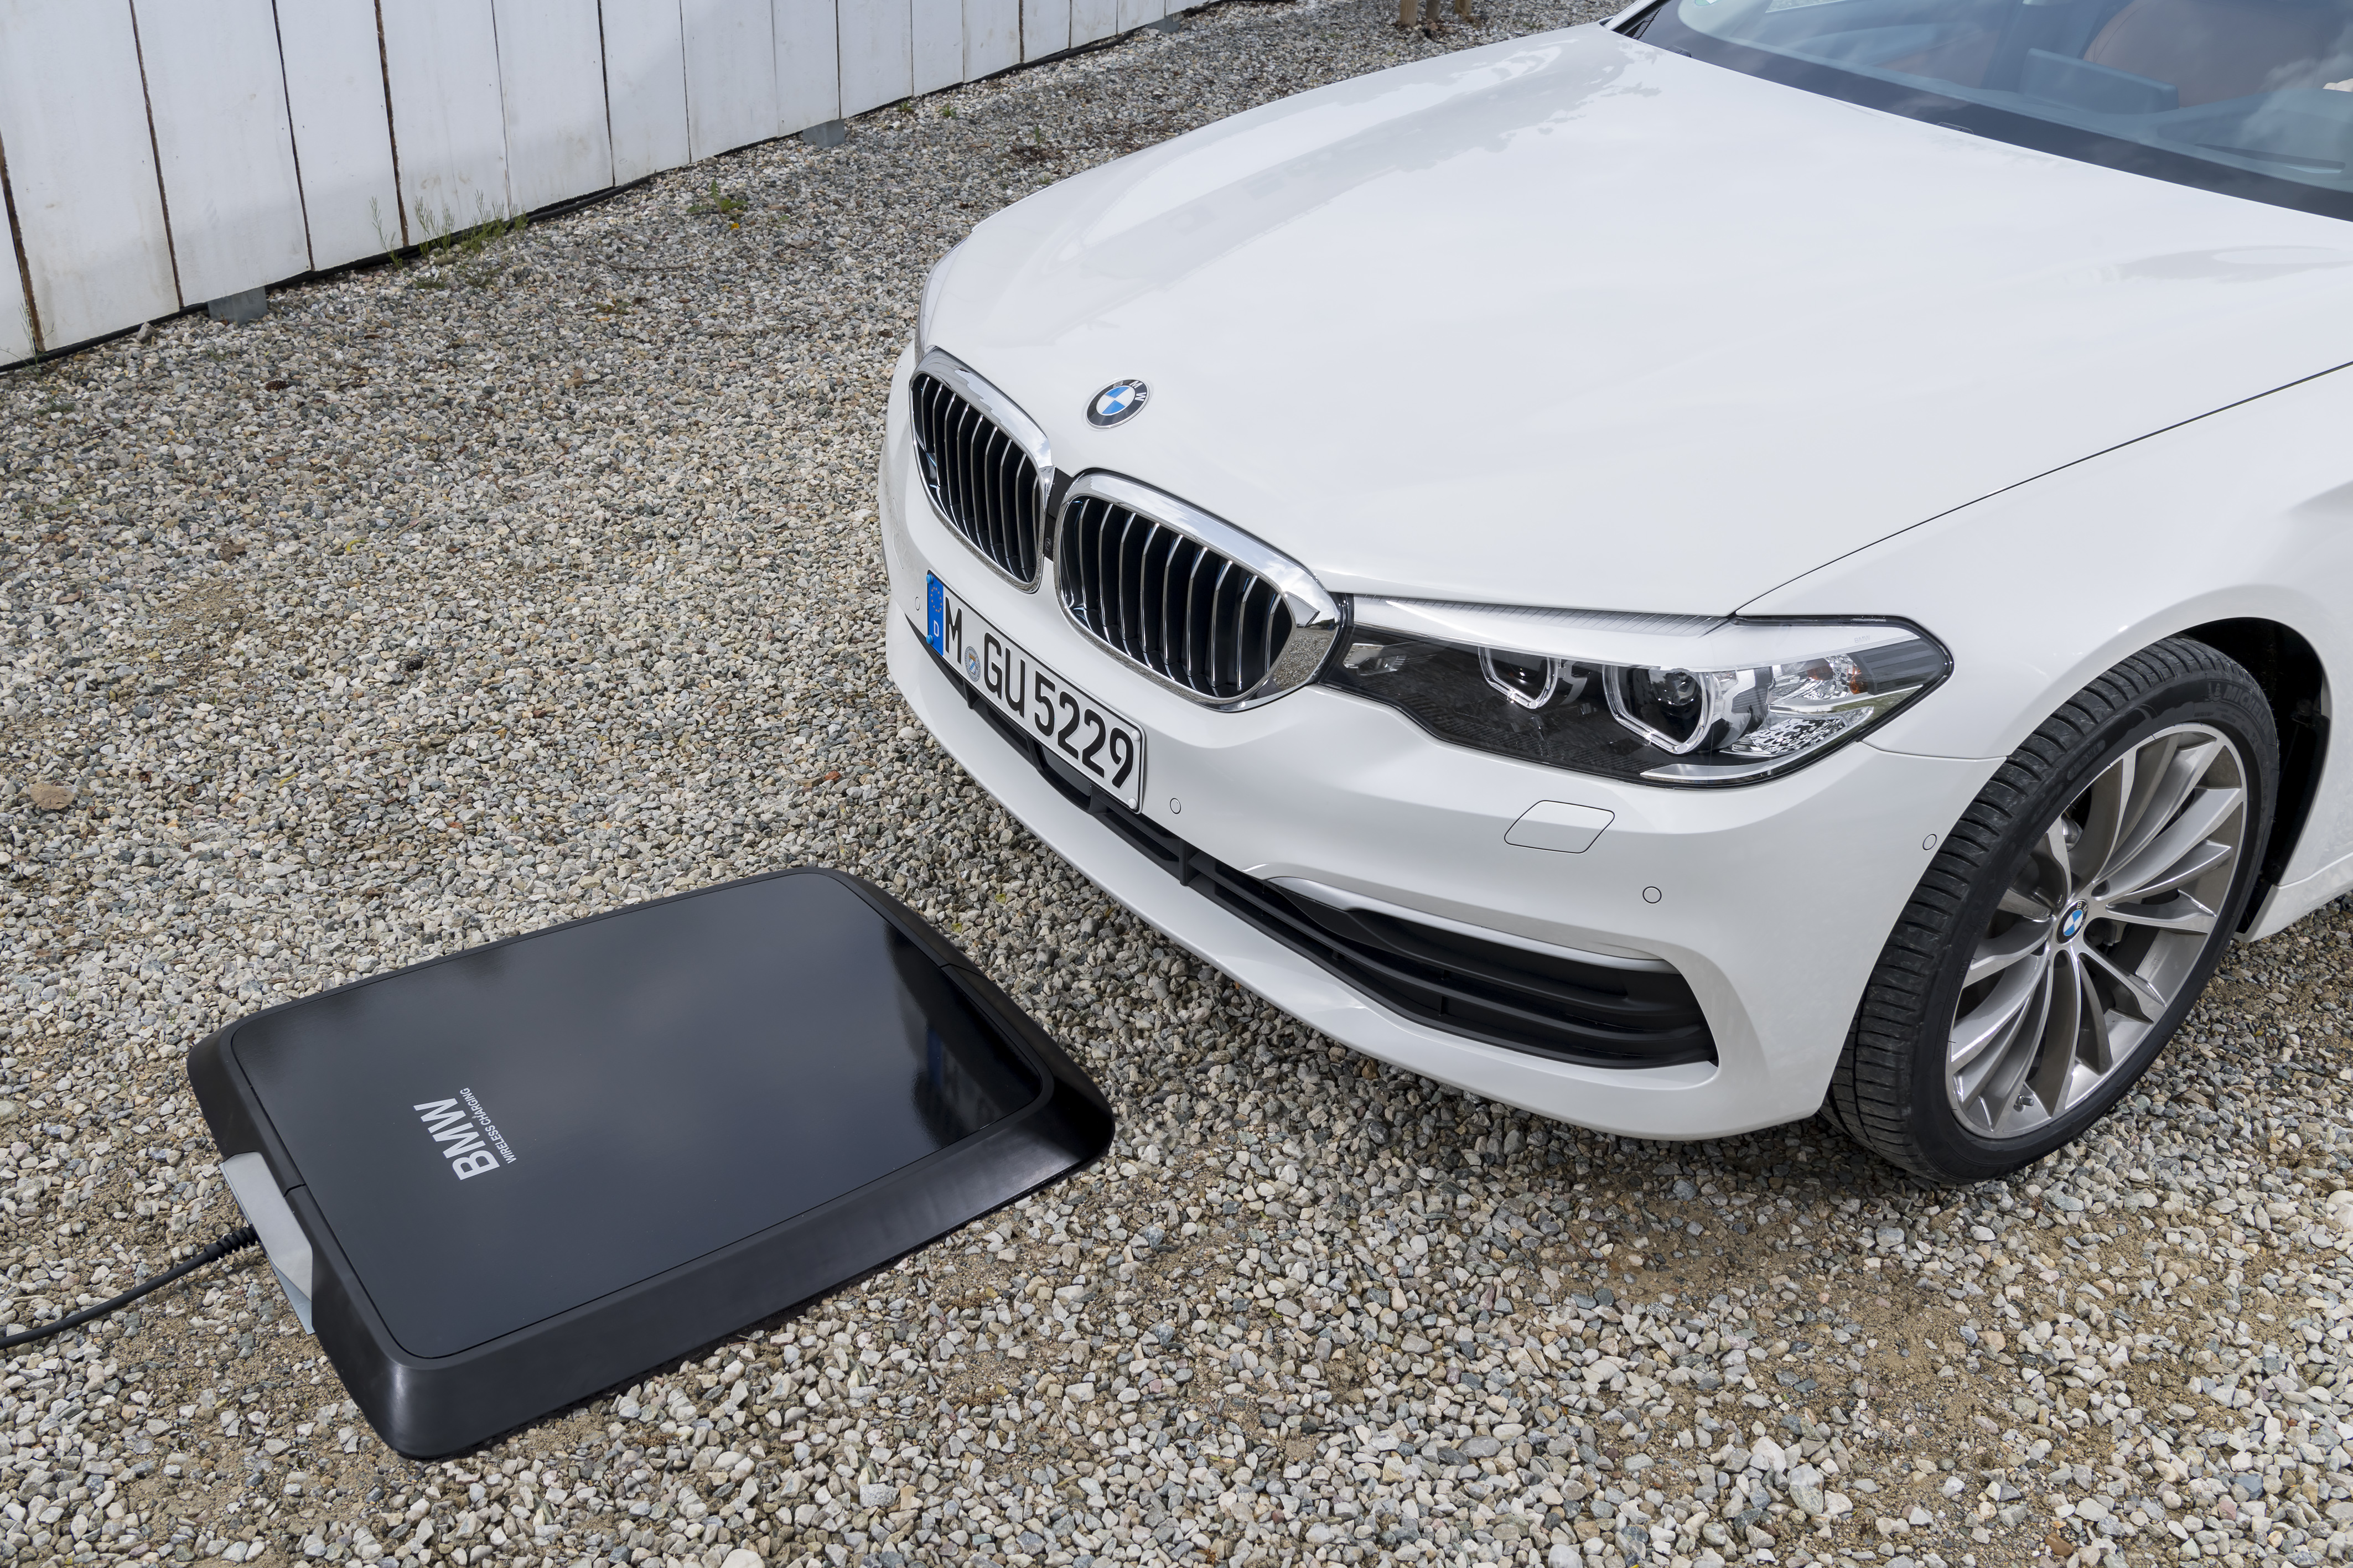 BMW lance son chargeur sans fil pour ses voitures hybrides